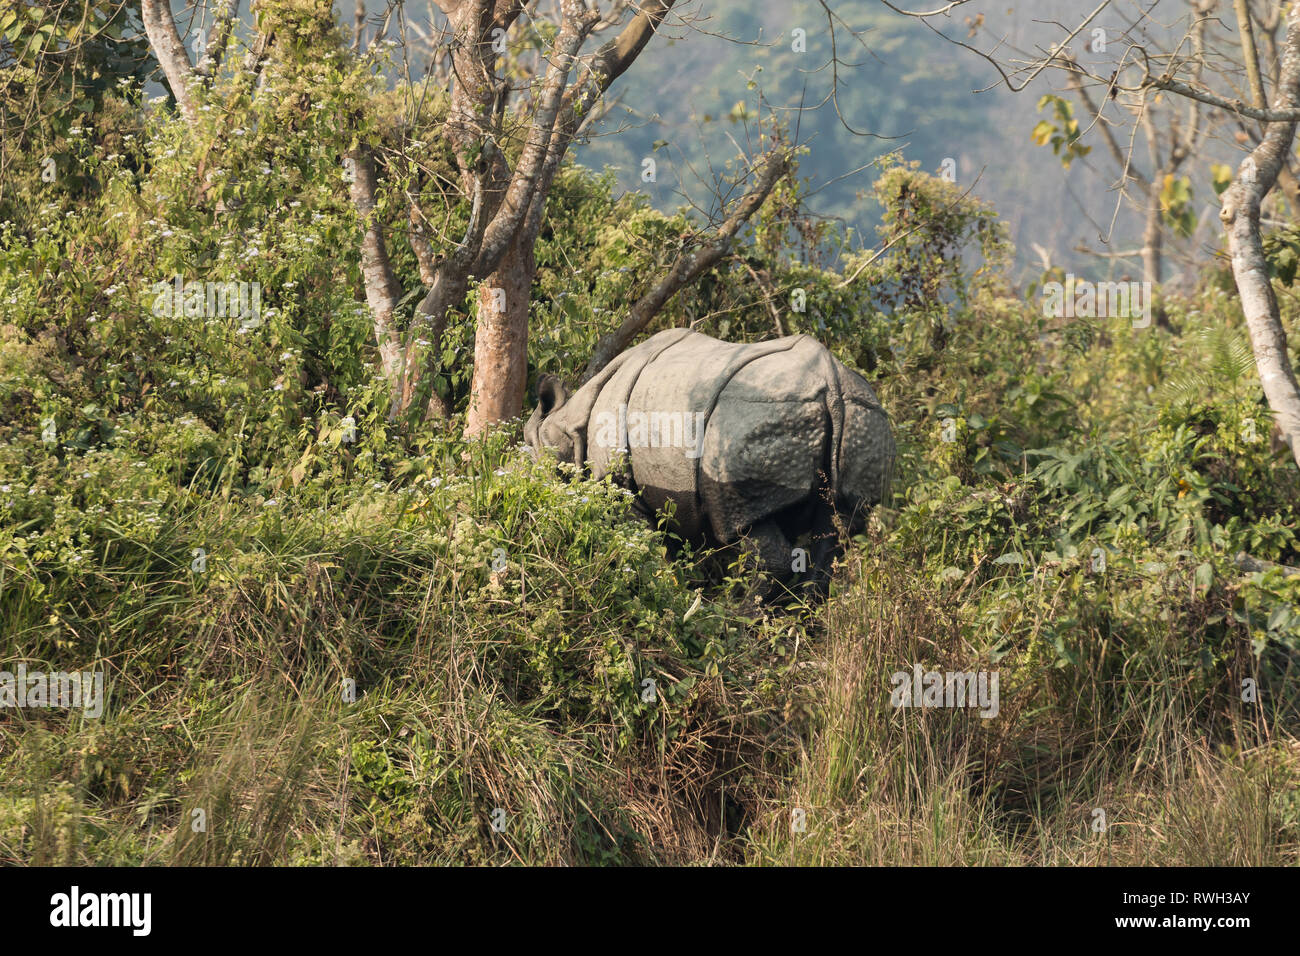 Le rhinocéros indien (Rhinoceros unicornis) dans le parc national de Chitwan, Népal - une destination populaire pour les touristes l'observation de la faune. Banque D'Images